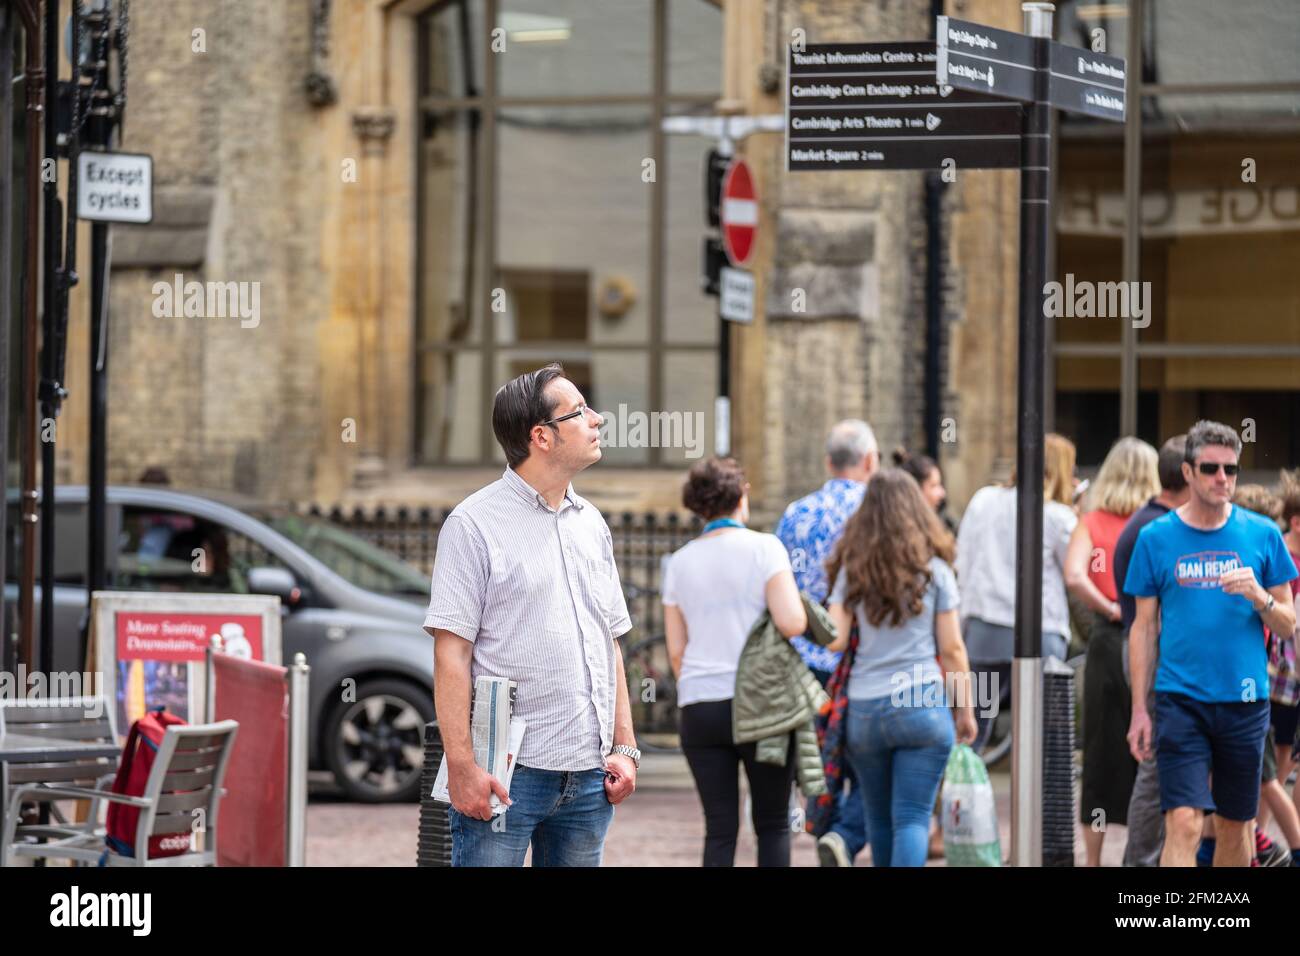 Viaggiatori che leggono le indicazioni per le attrazioni turistiche con le indicazioni stradali. Cambridge, Regno Unito, 1 agosto 2019. Foto Stock